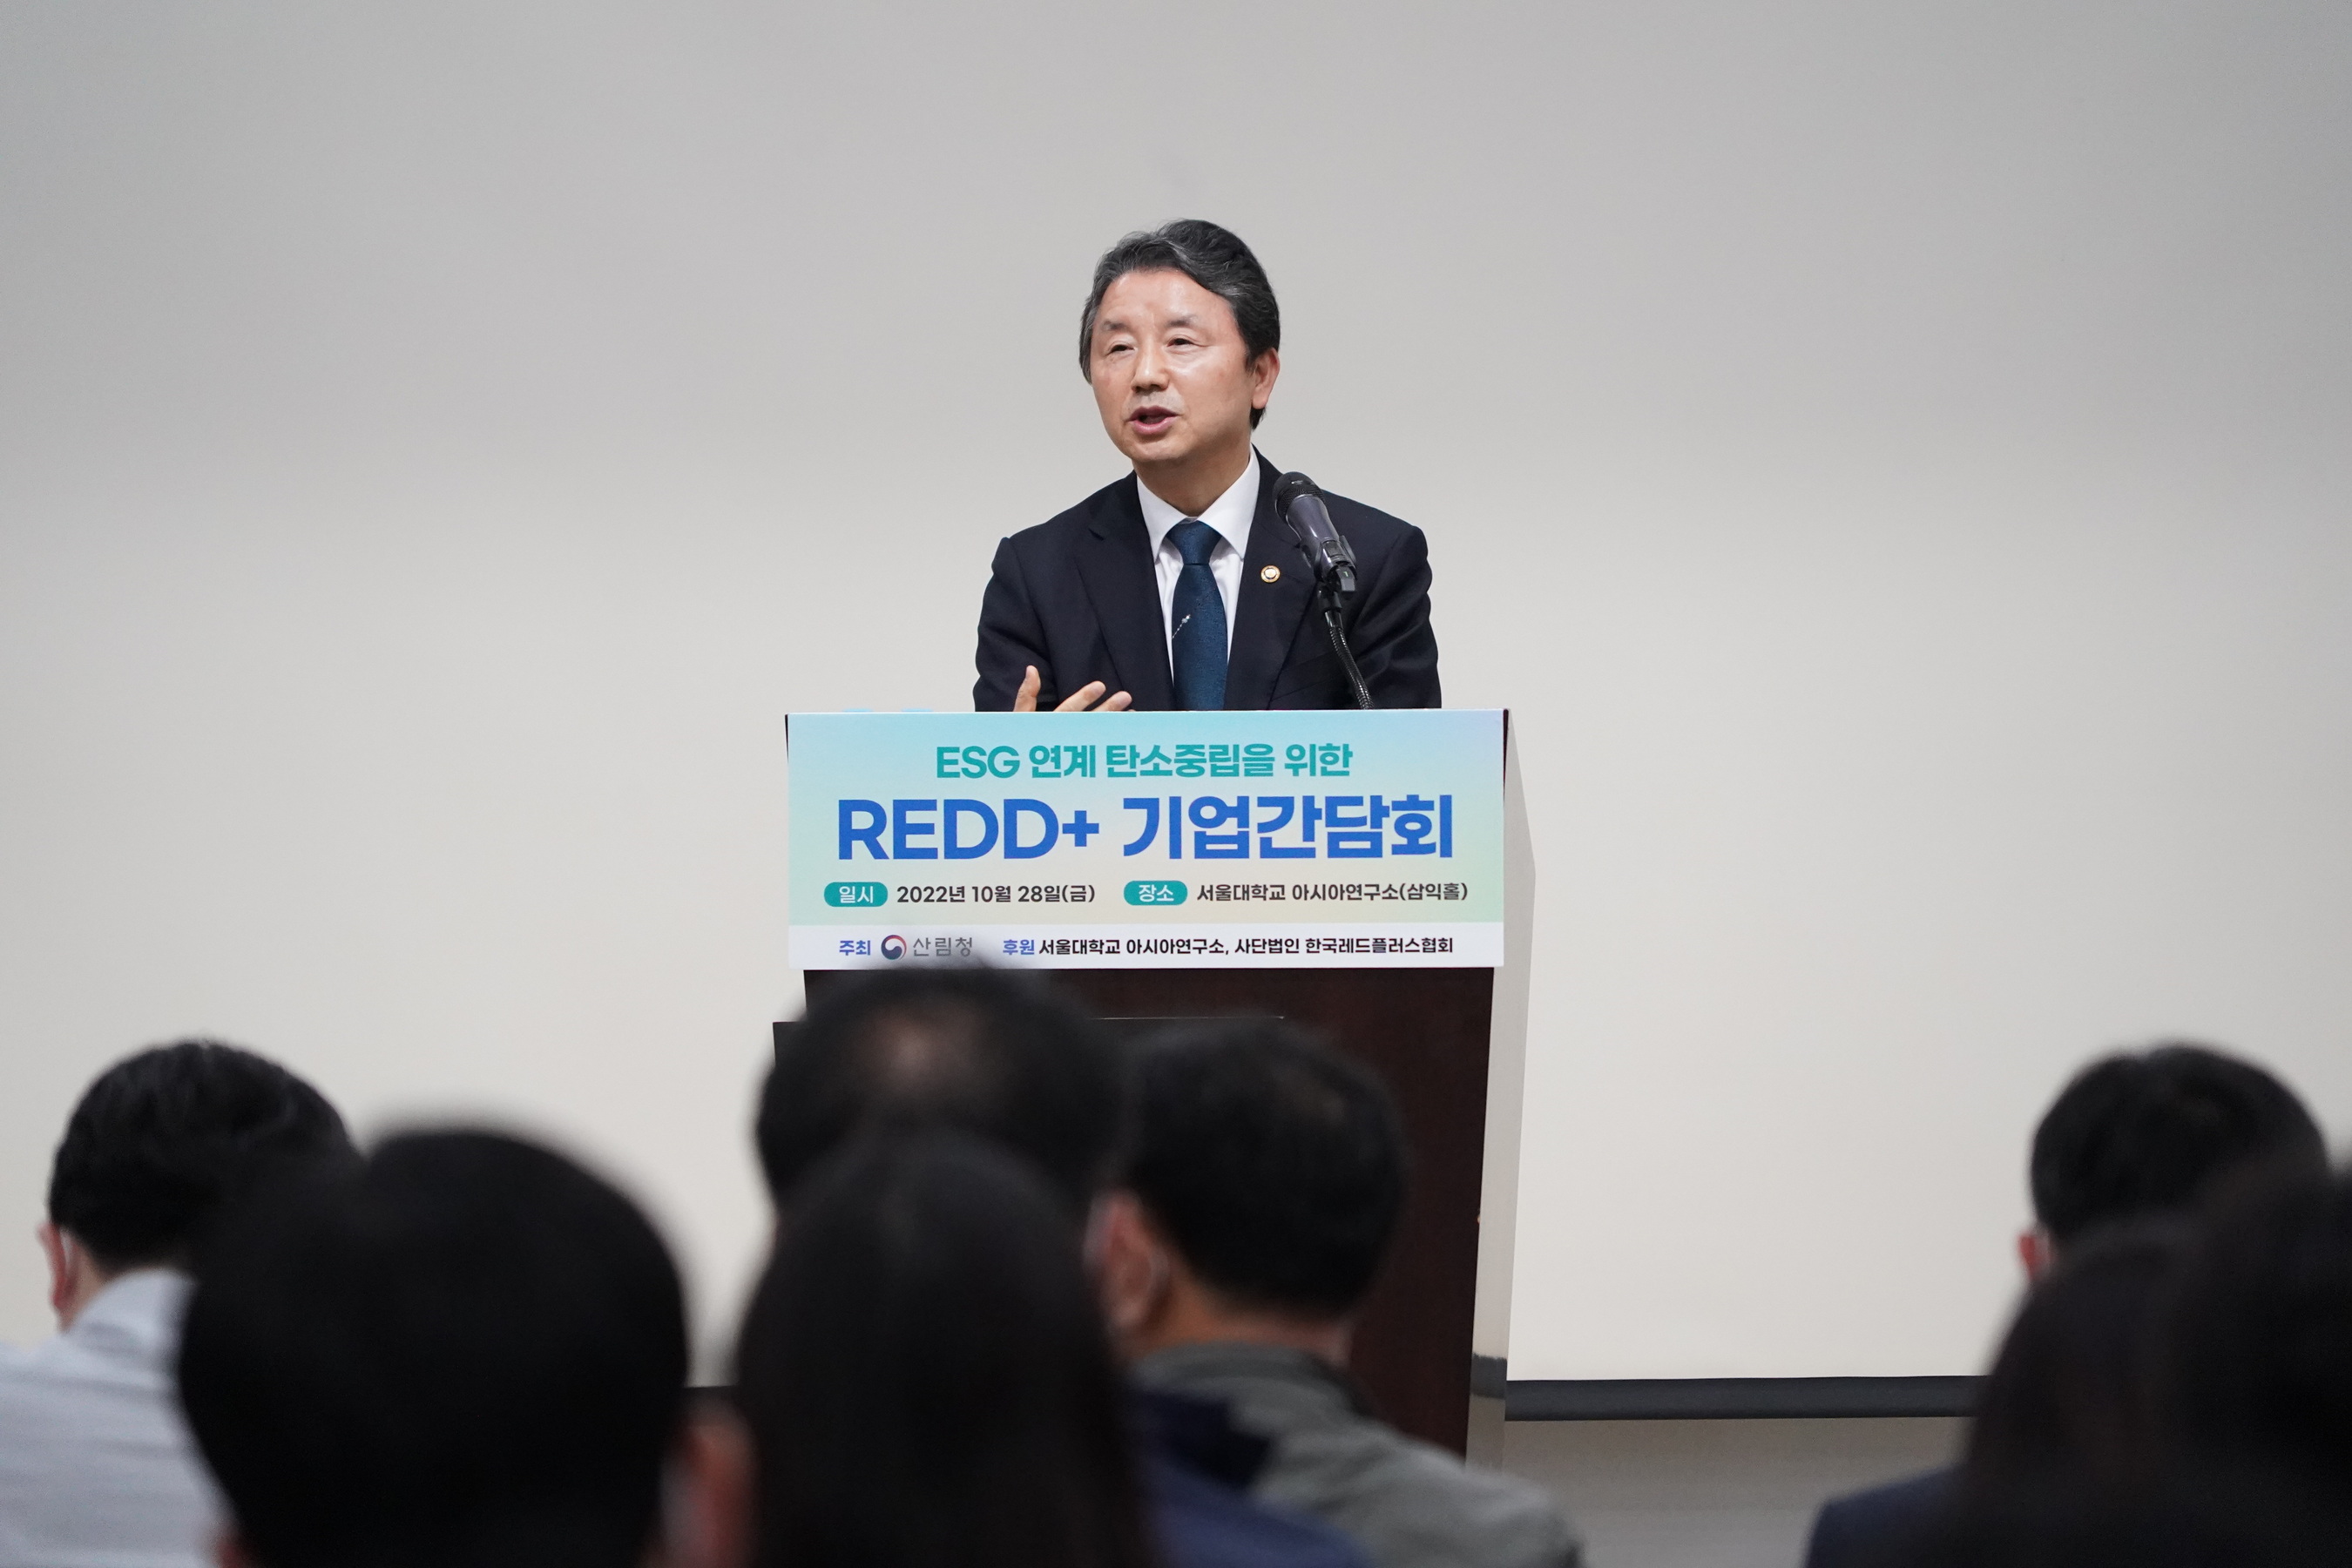 남성현 산림청장, ESG 연계 탄소중립을 위한 REDD+ 기업간담회 참석 